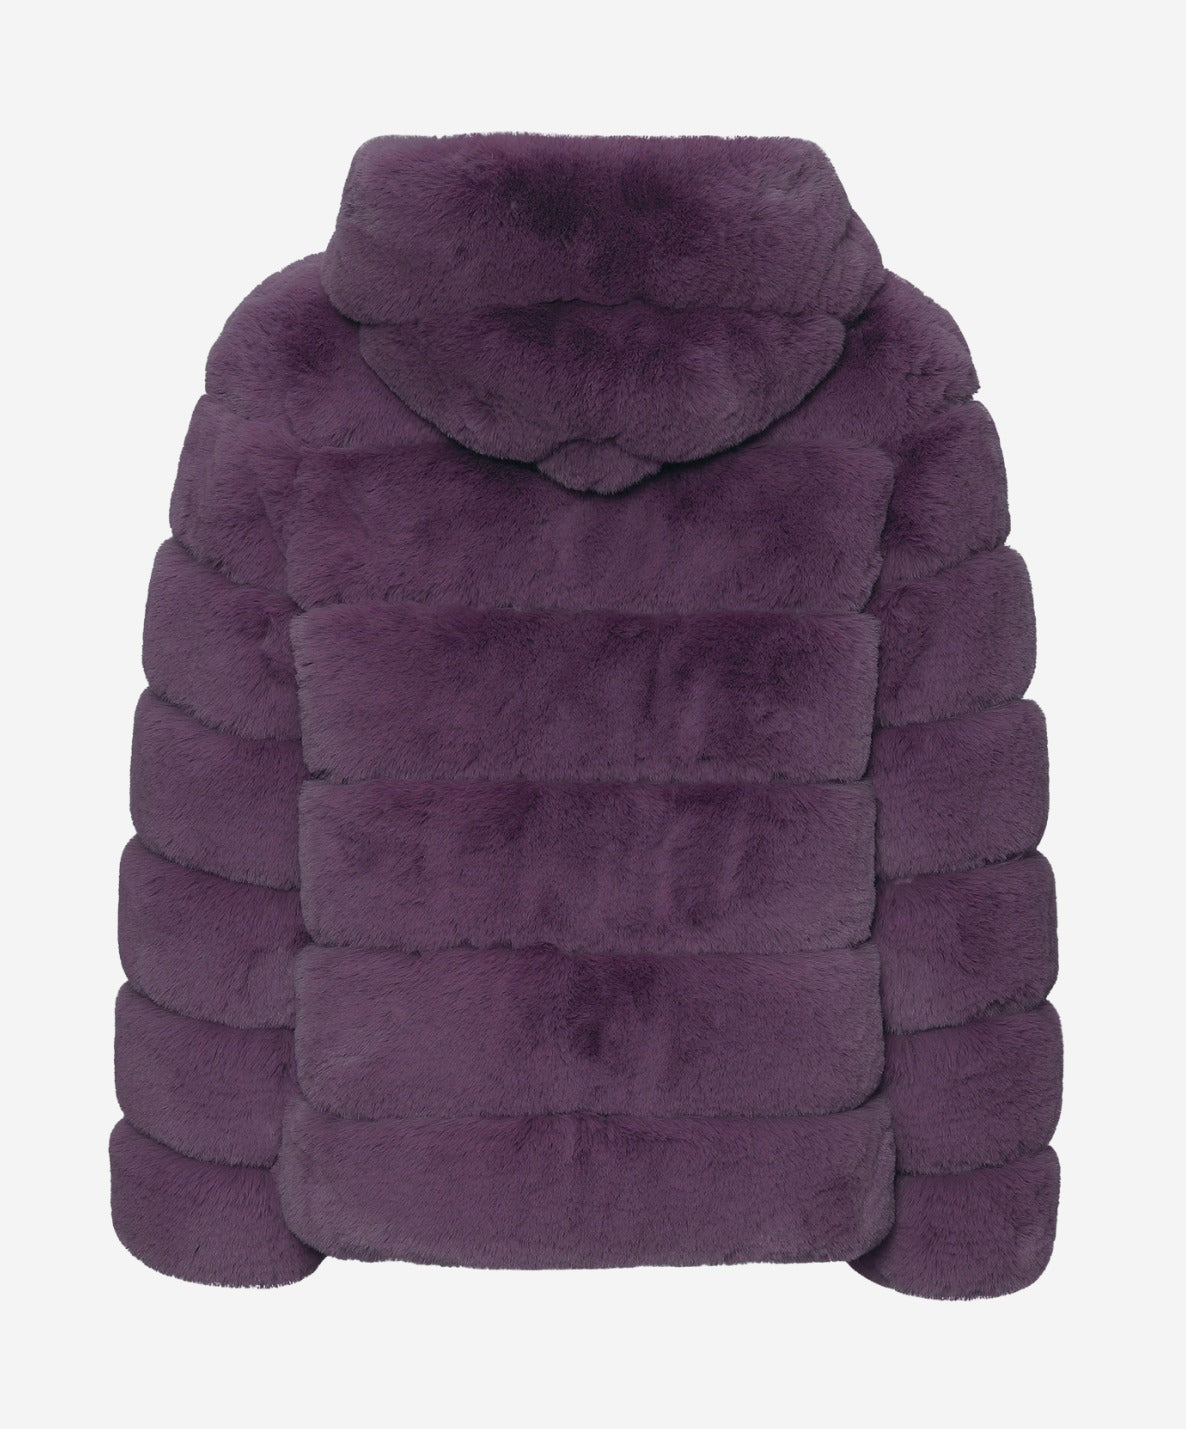 Blake Faux Fur Jacket Short Purple - Sample